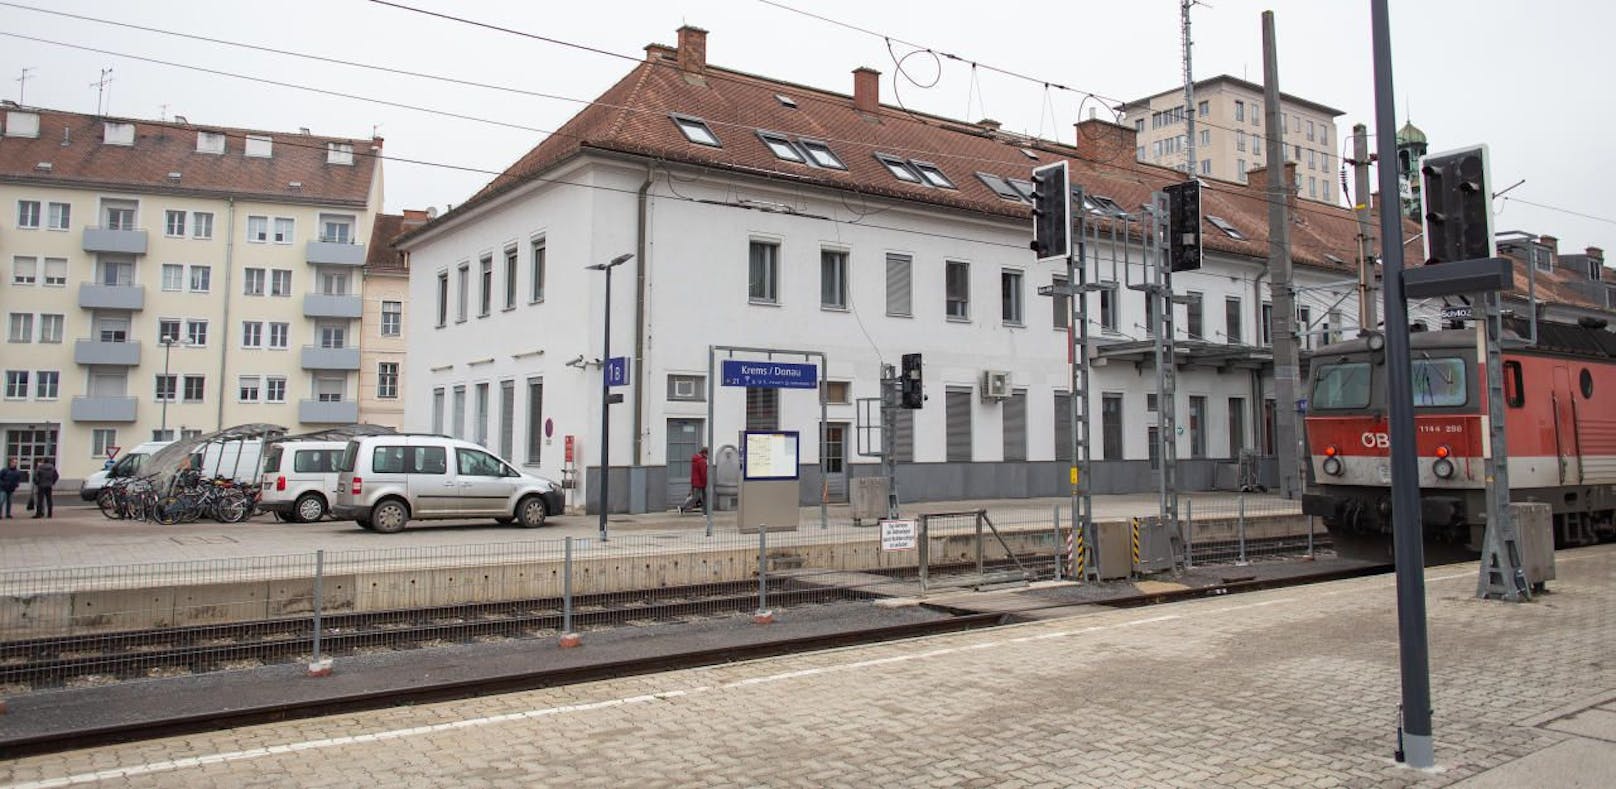 Der Bahnhof in Krems: Pensionistin wurde überfallen